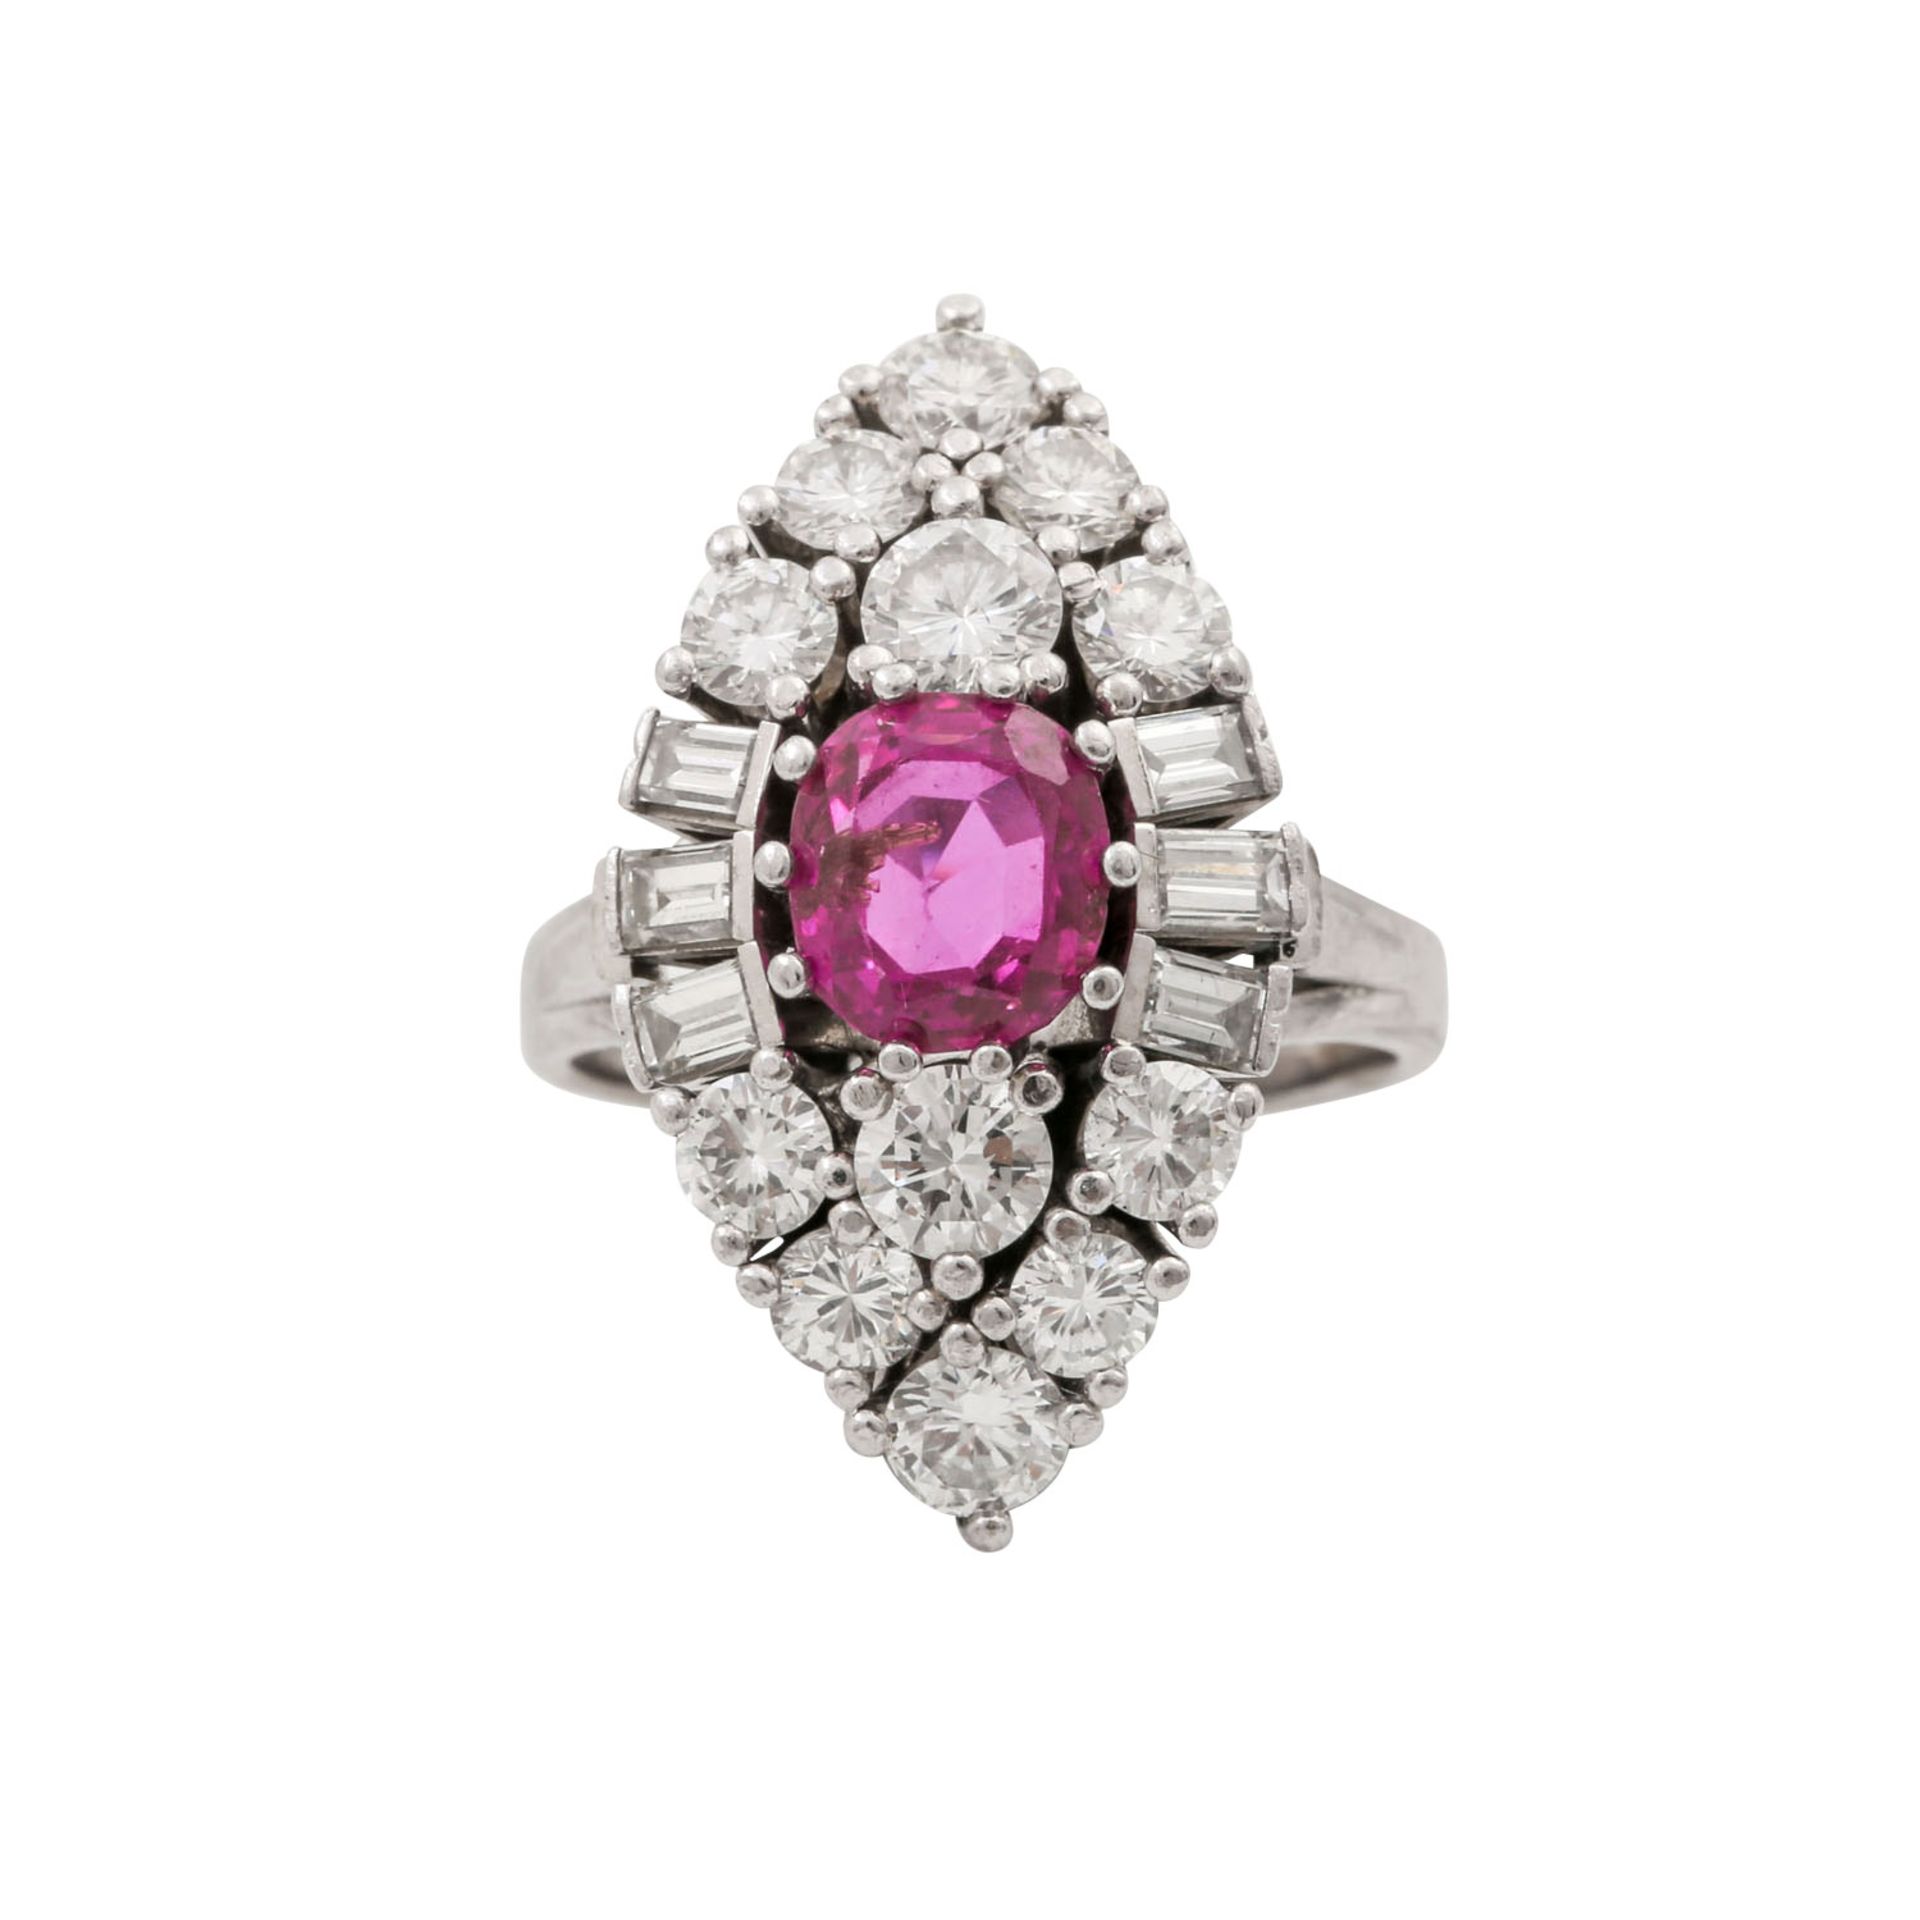 Ring mit pinkfarbenem Saphir ca. 2,5 ct, Brillanten zus. ca. 1,5 ct und Diamantbaguett - Bild 2 aus 5